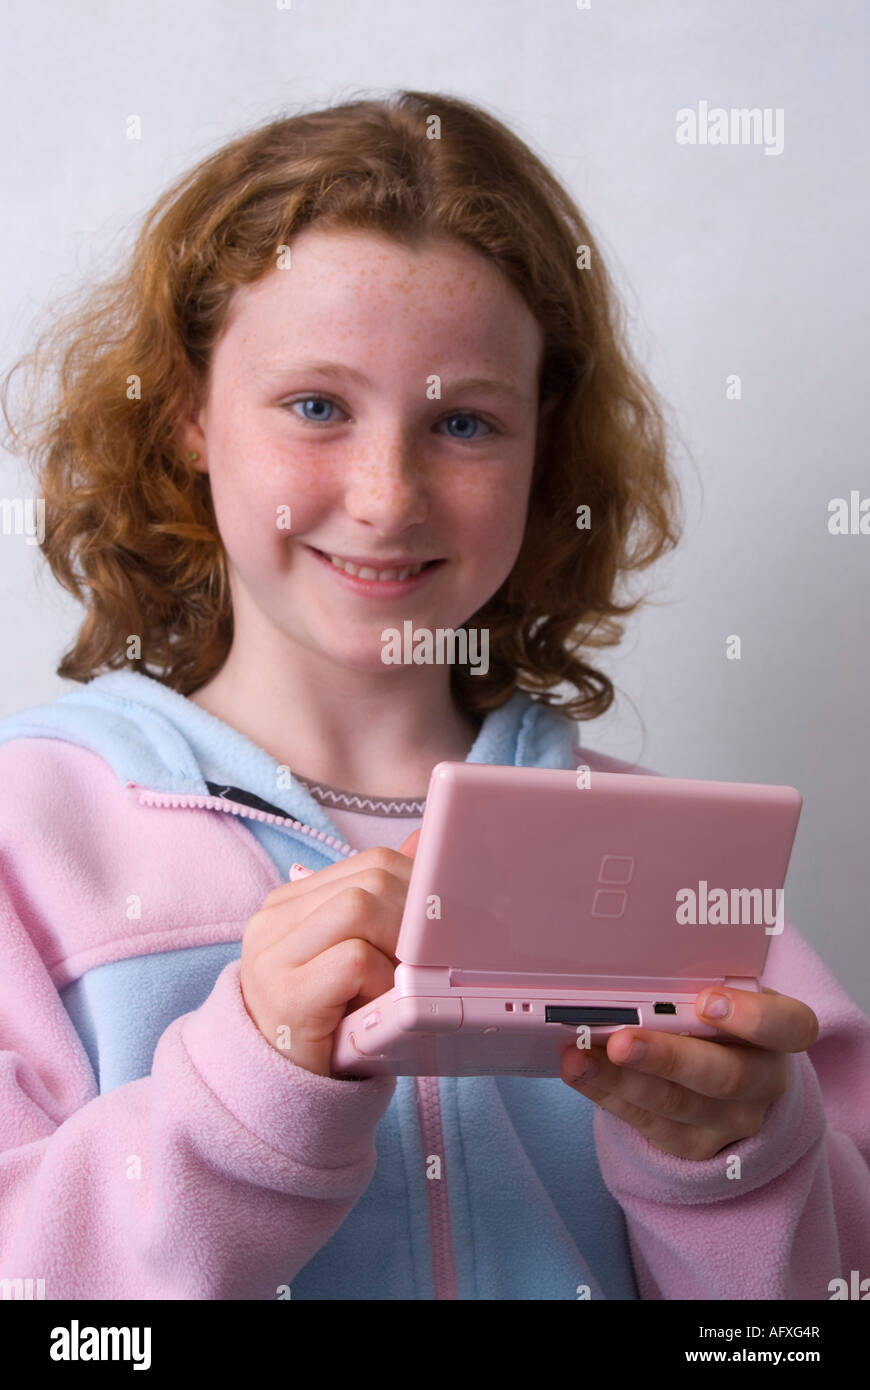 Una niña de 11 años jugando en una máquina de juego de Nintendo DS Lite  utilizando un lápiz Fotografía de stock - Alamy